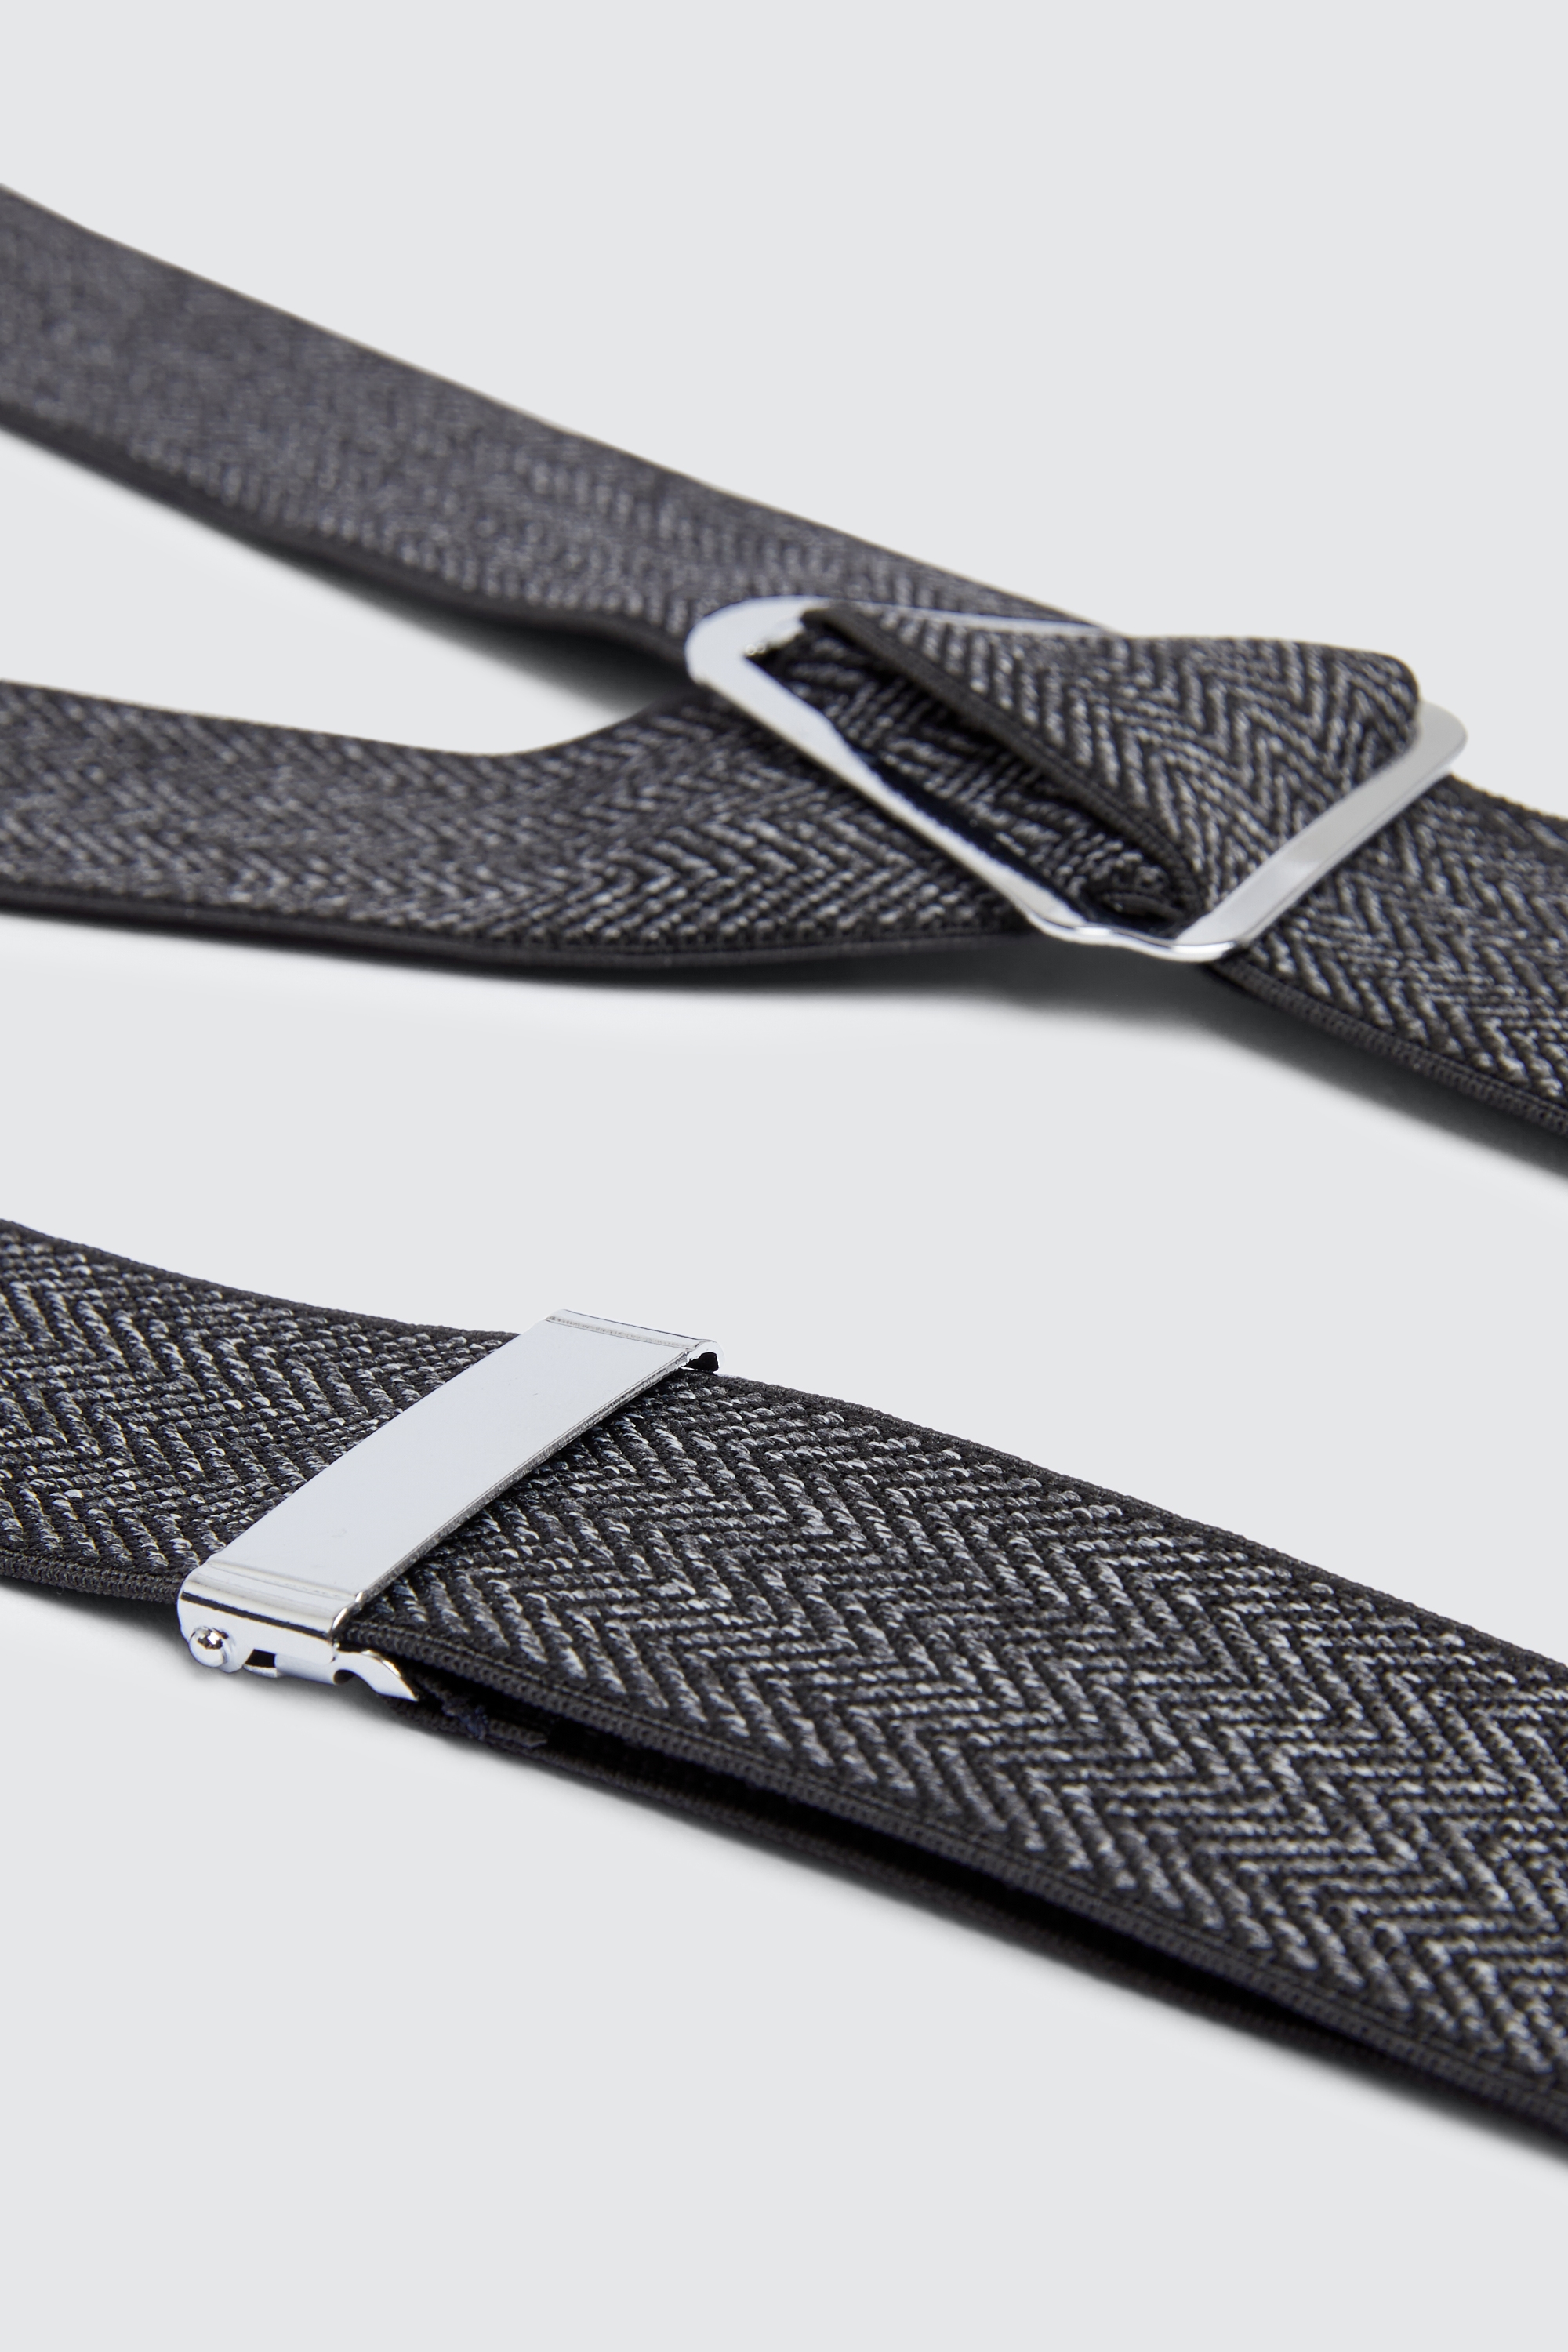 Charcoal Herringbone Tweed Clip-On Braces | Buy Online at Moss